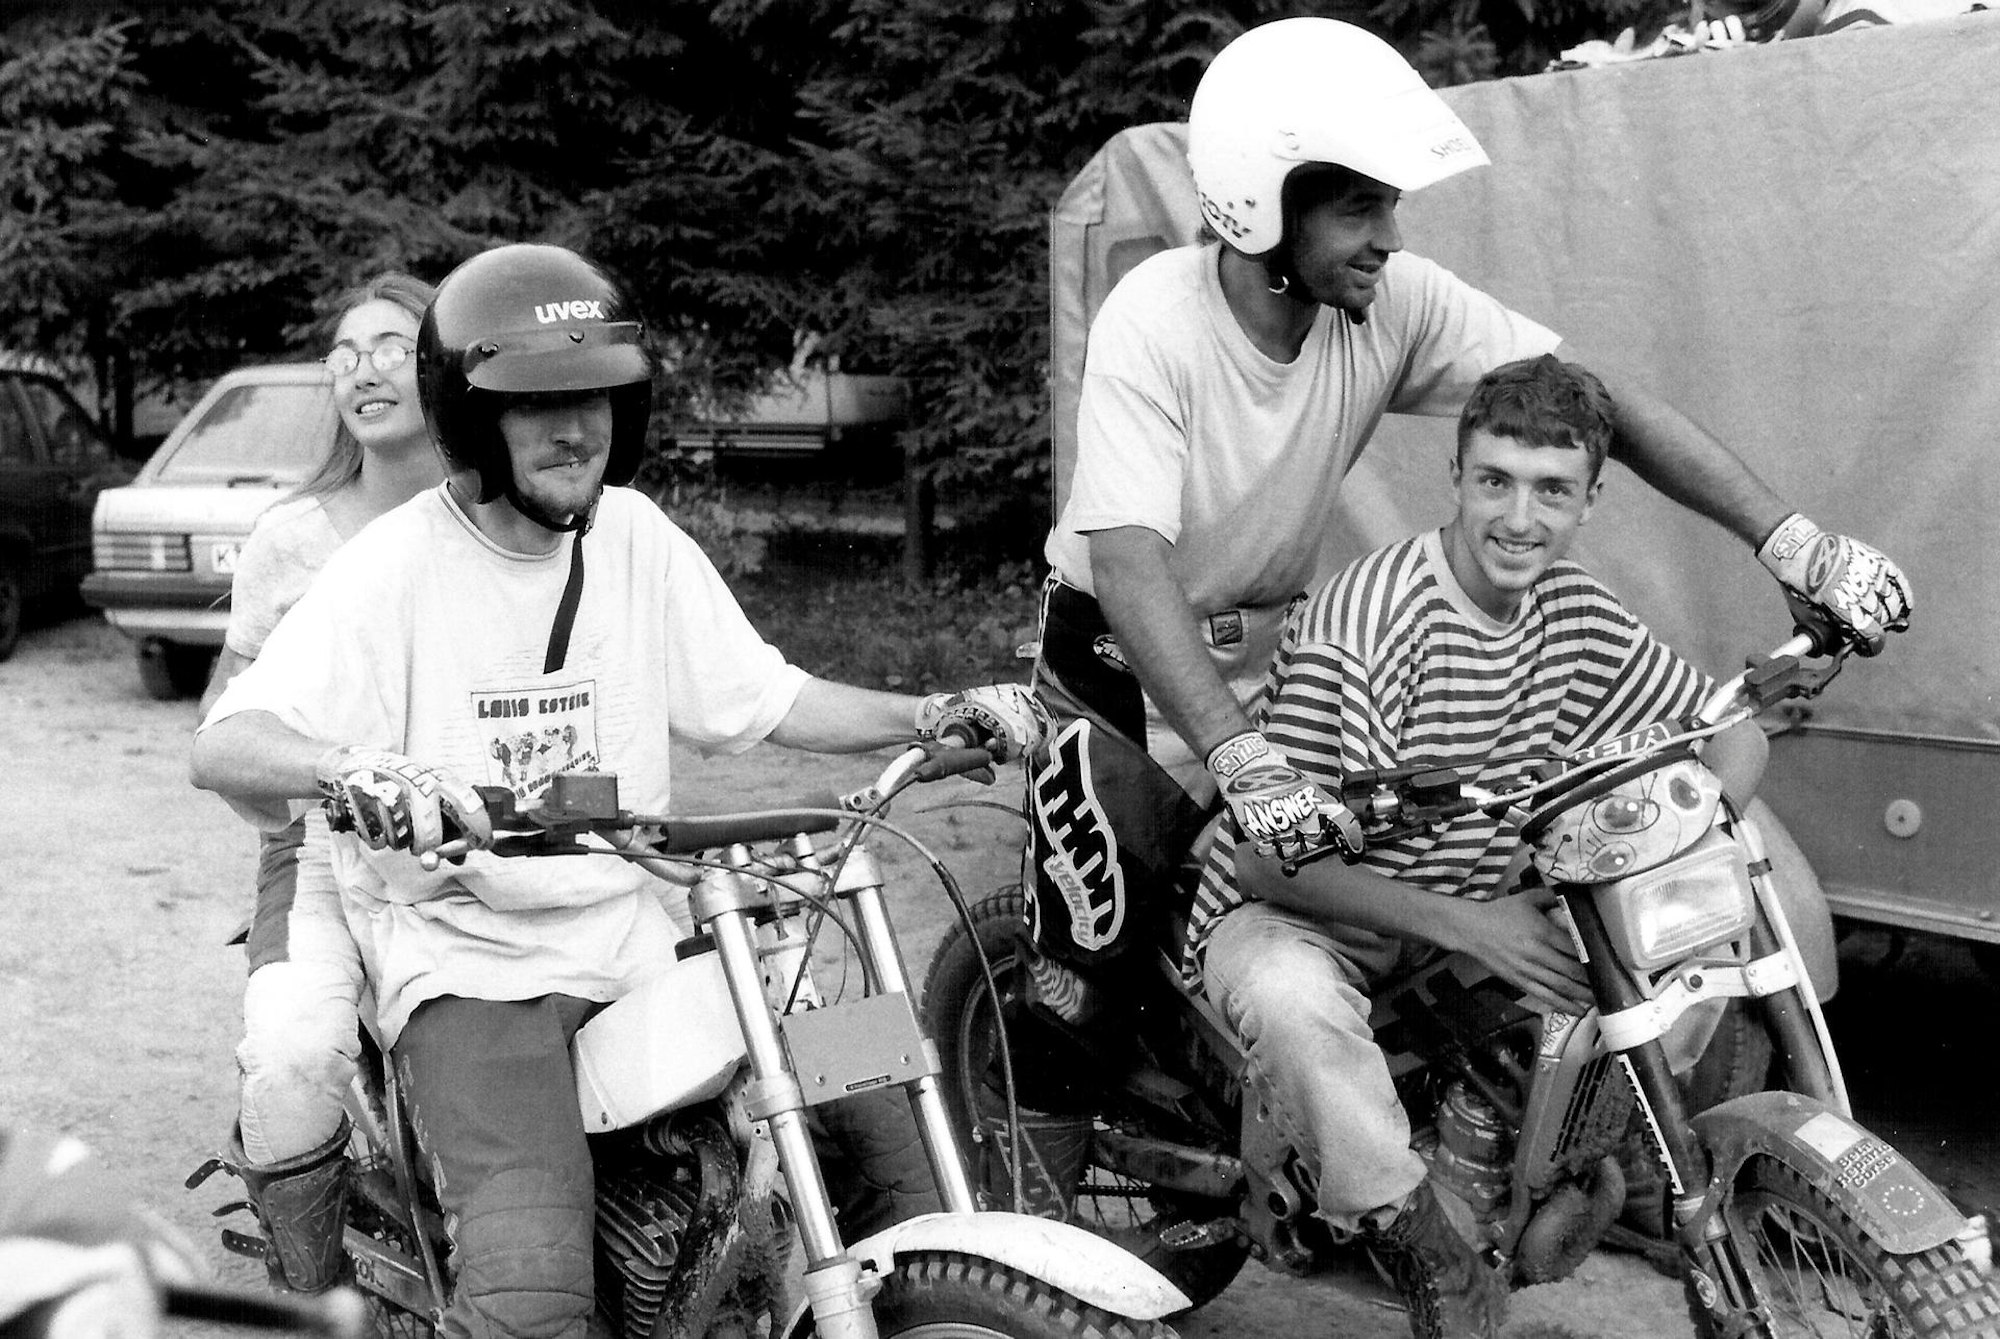 Zugang zu jungen Leuten fand der Sozialarbeiter im früheren Trial-Zeltlagers beim Geschicklichkeitsfahren mit dem Motorrad.